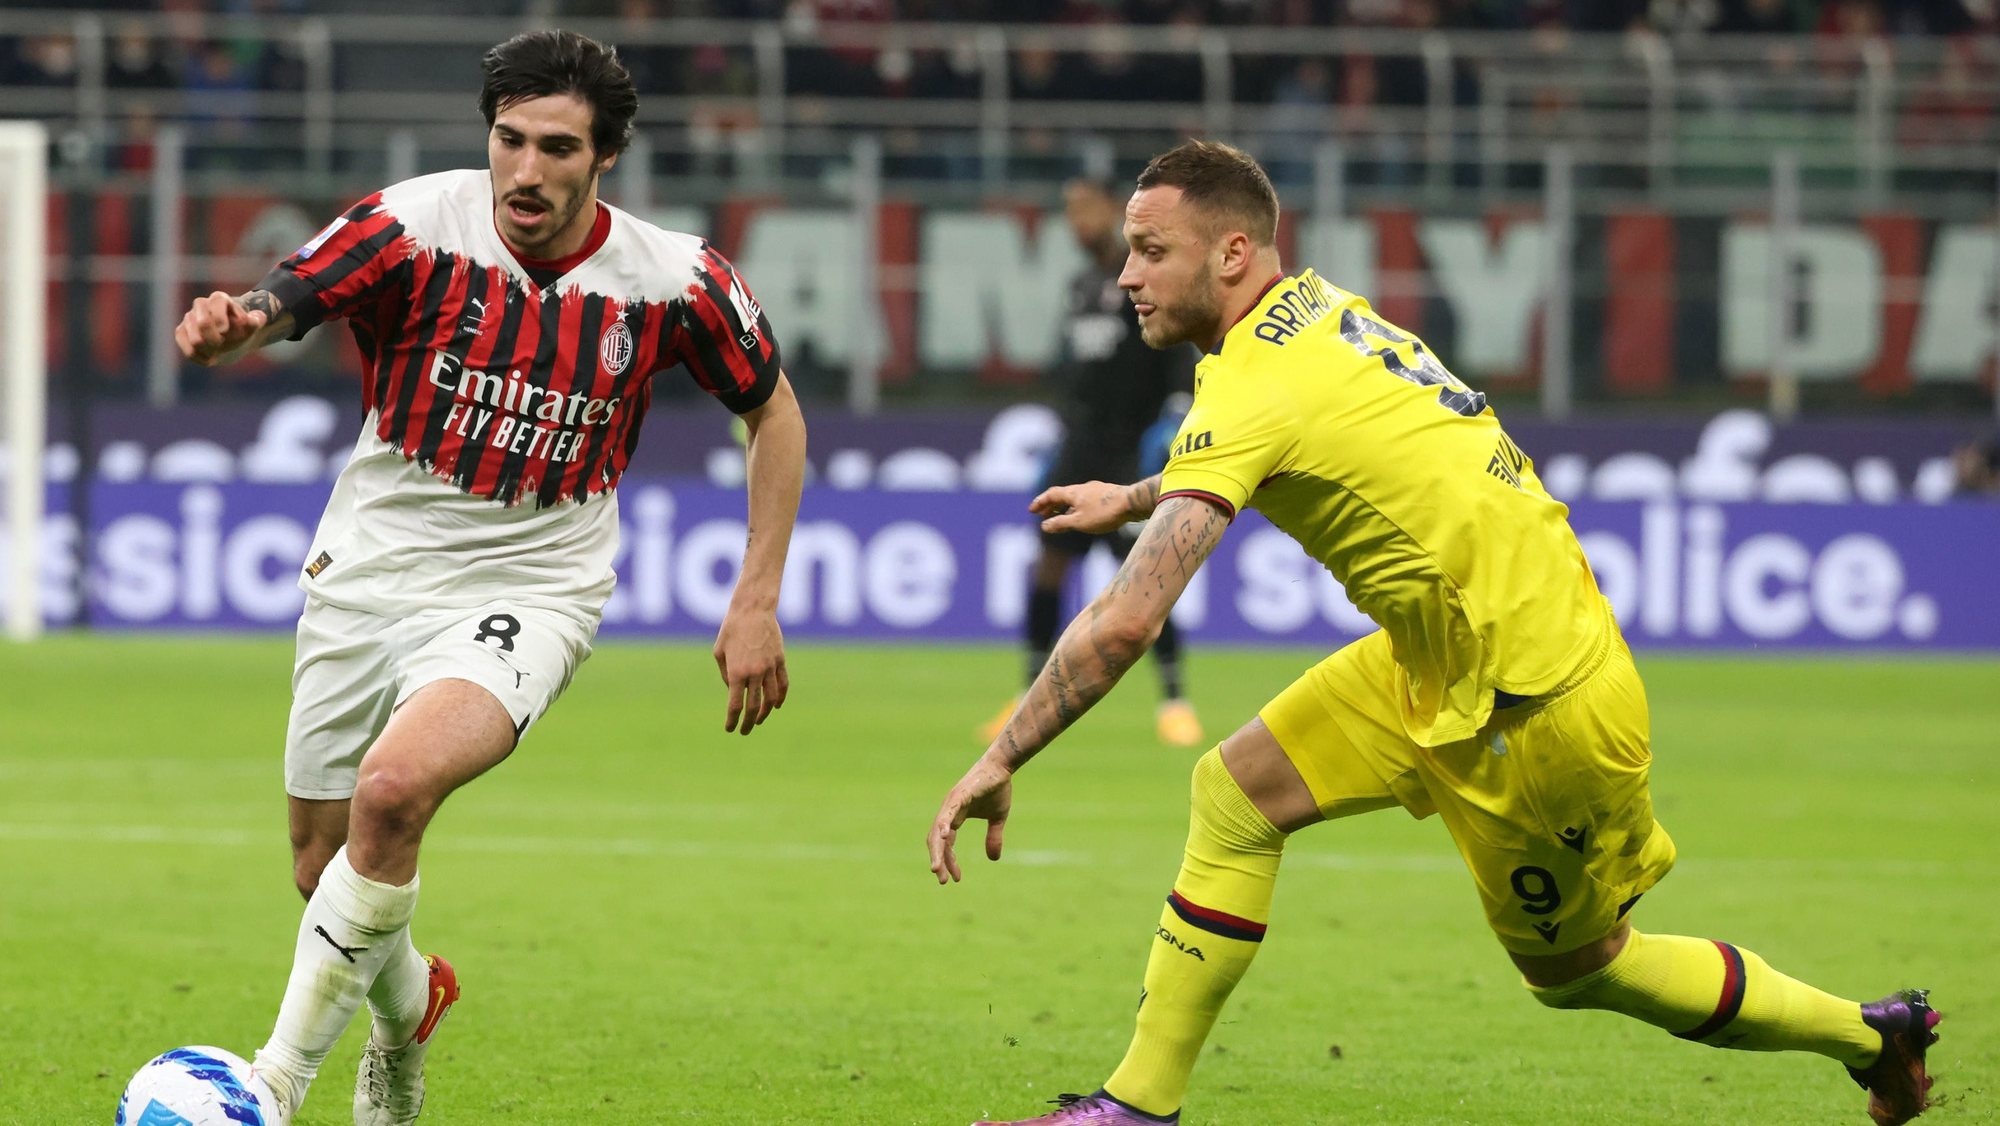 AC Milan empata com Bolonha e fica com liderança reduzida na Liga italiana  – Observador